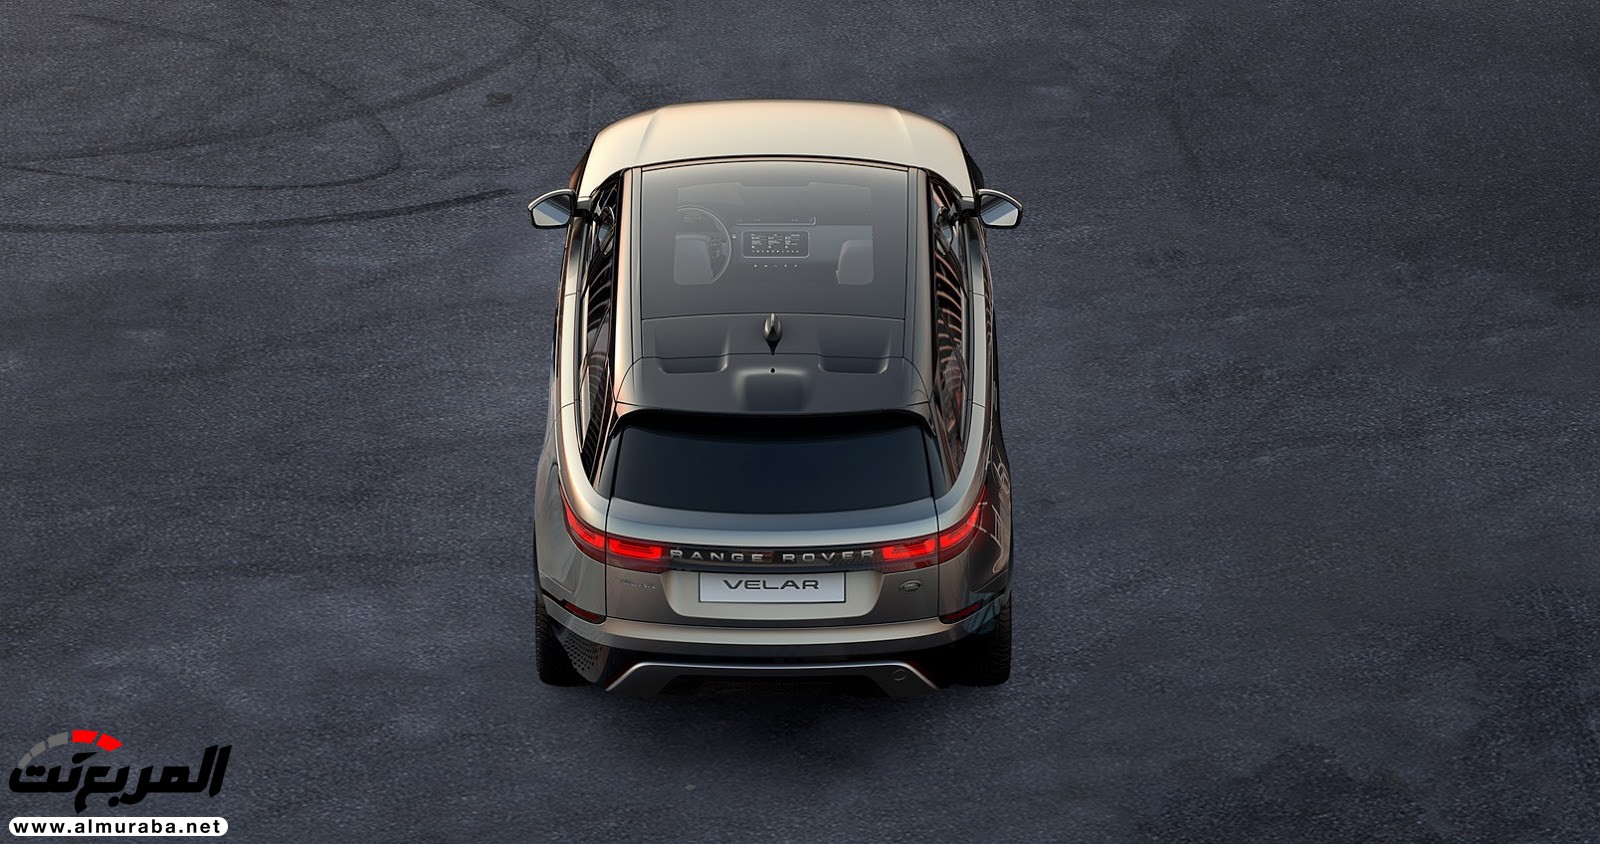 تُرى أهذا هو شكل داخل "رينج روفر" فيلار الجديدة كليا 2018؟ Range Rover Velar 9